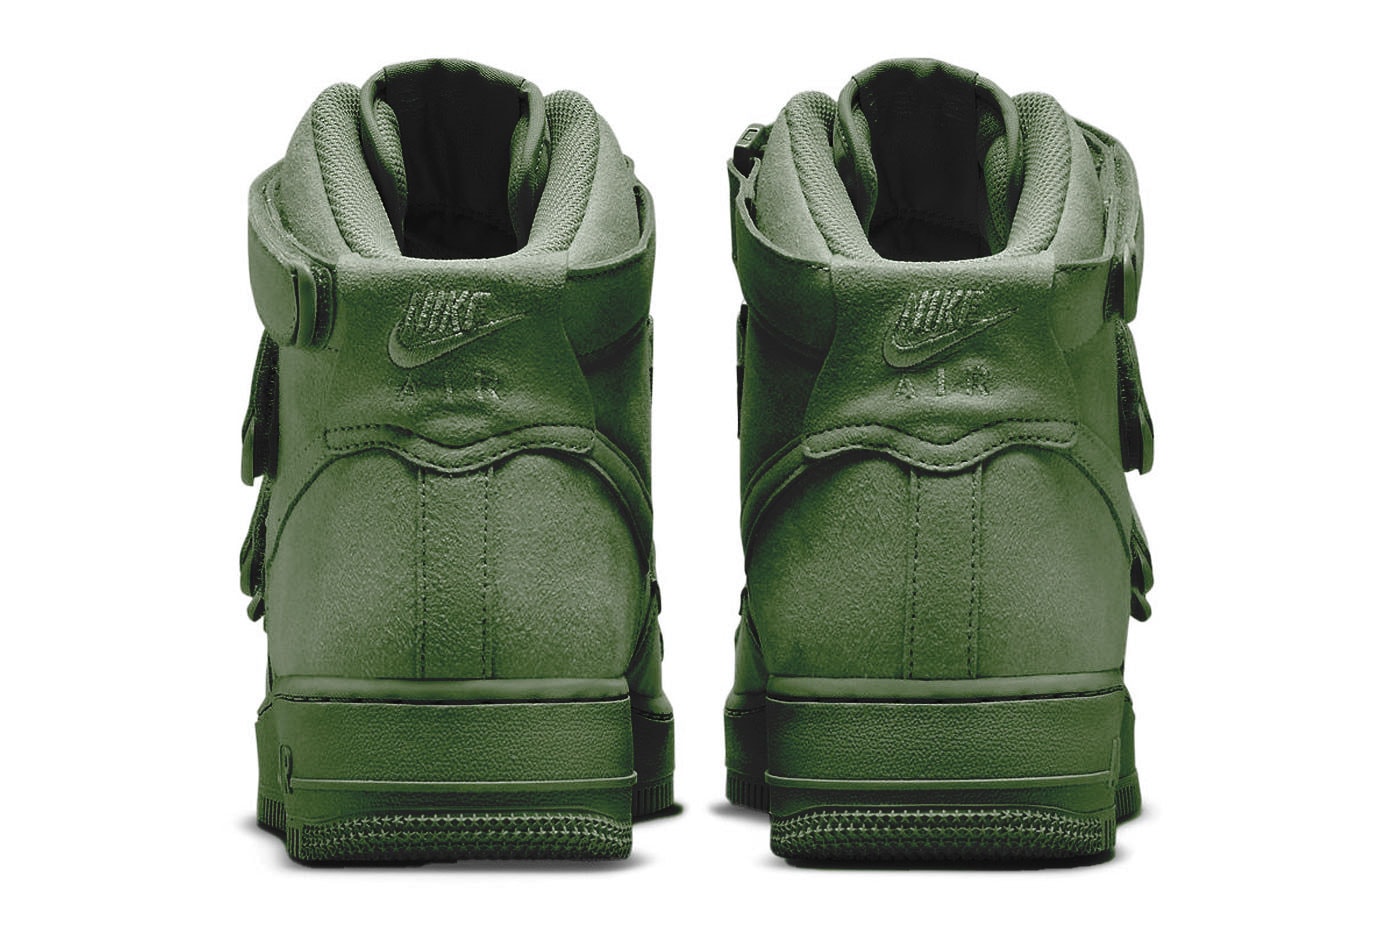 ビリー・アイリッシュ x ナイキエアフォース 1 ハイ “セコイア” の公式ビジュアルをチェック Take an Official Look at the Billie Eilish x Nike Air Force 1 High "Sequoia" DM7926-300 green af1 velcro eco friendly